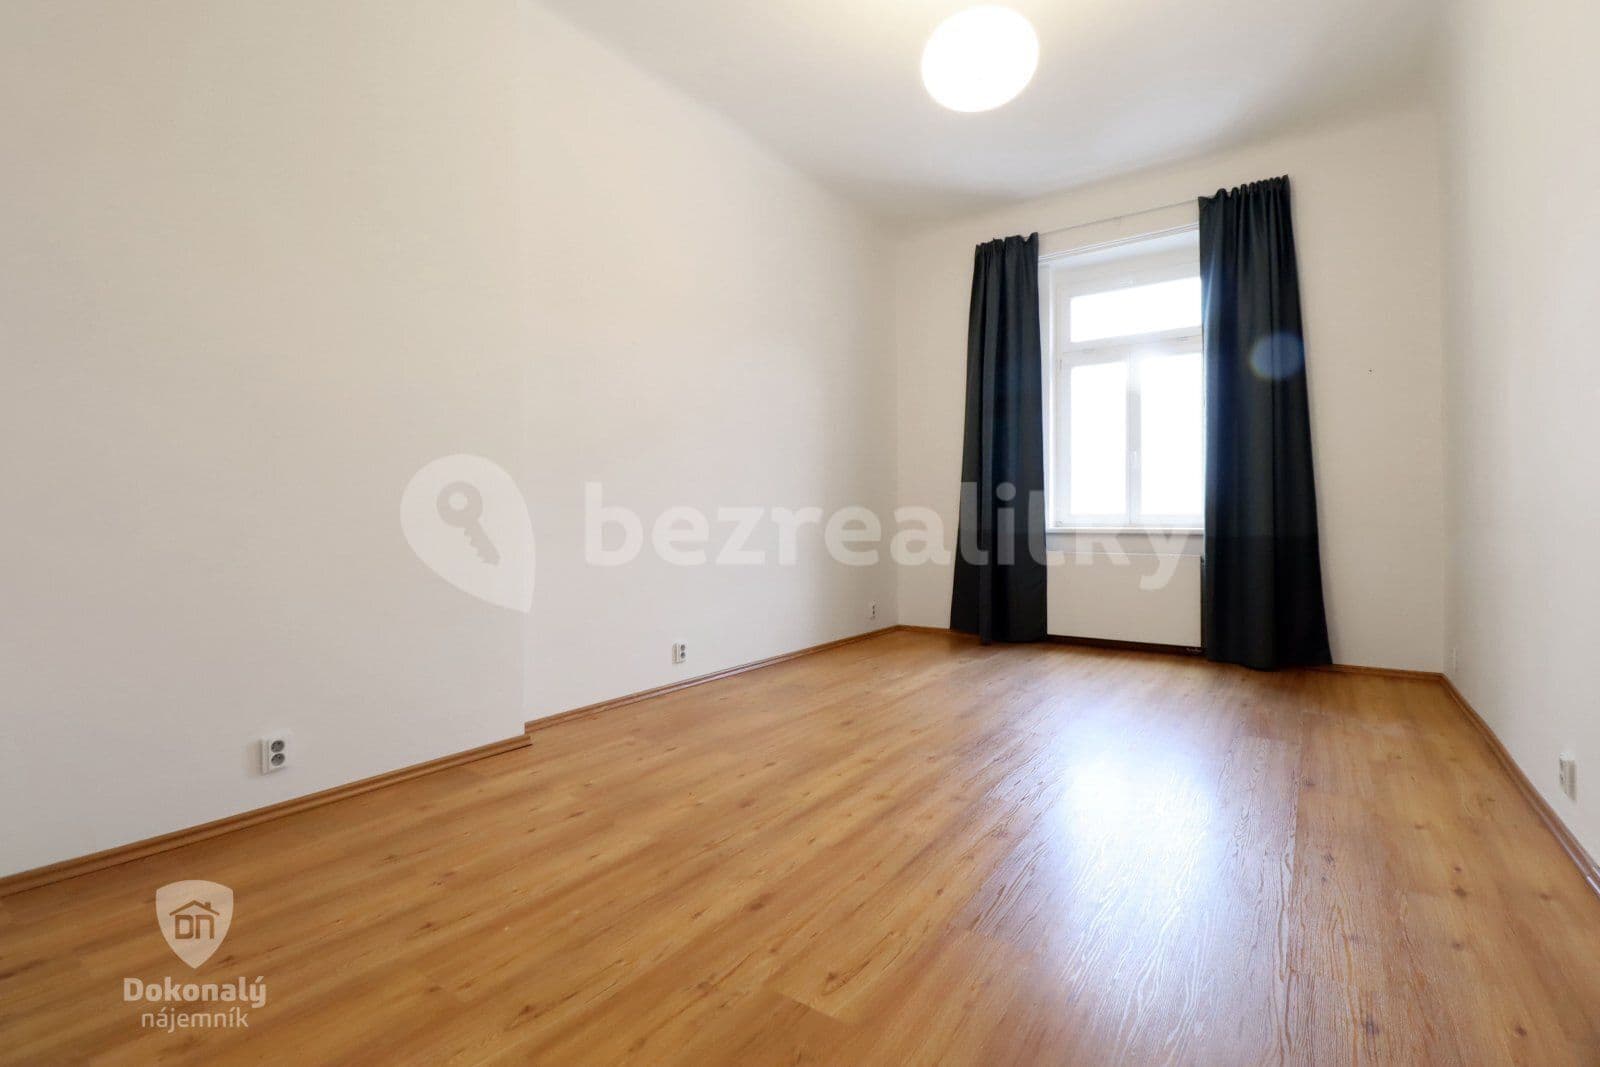 2 bedroom flat to rent, 66 m², Zoubkova, Prague, Prague